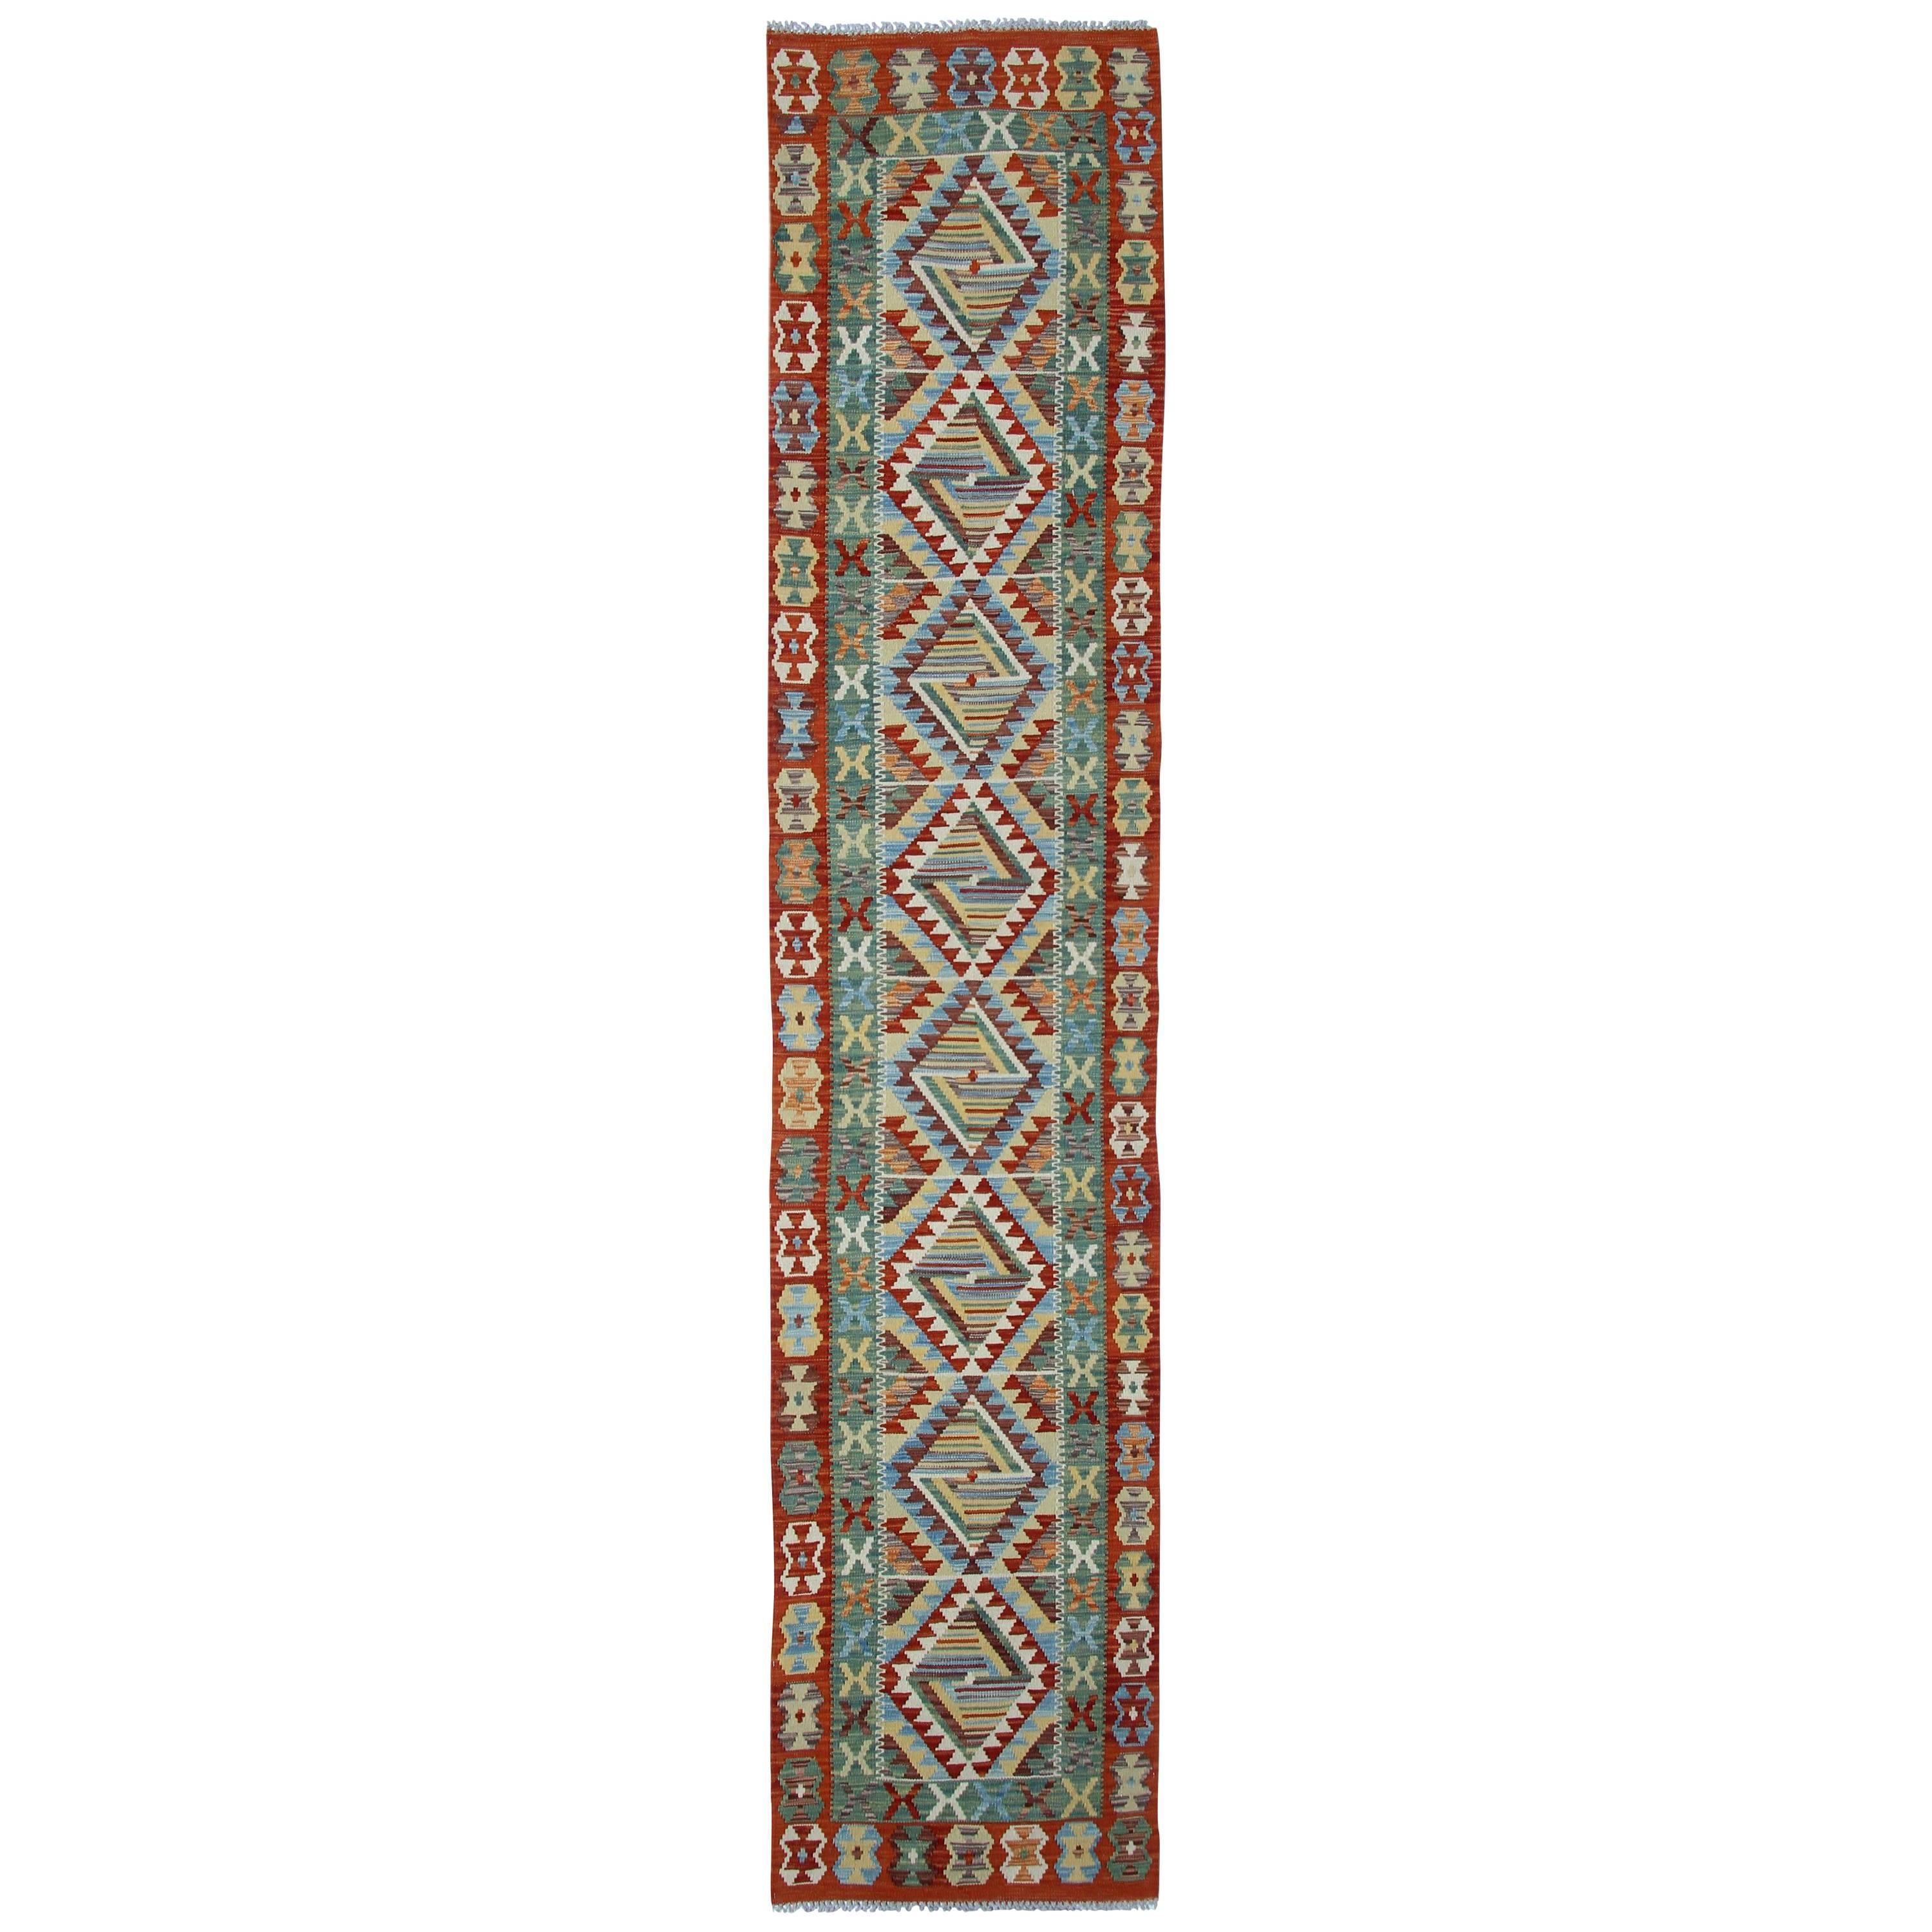 Afghan rugs, Kilim Rugs, Carpet Runners from Afghanistan